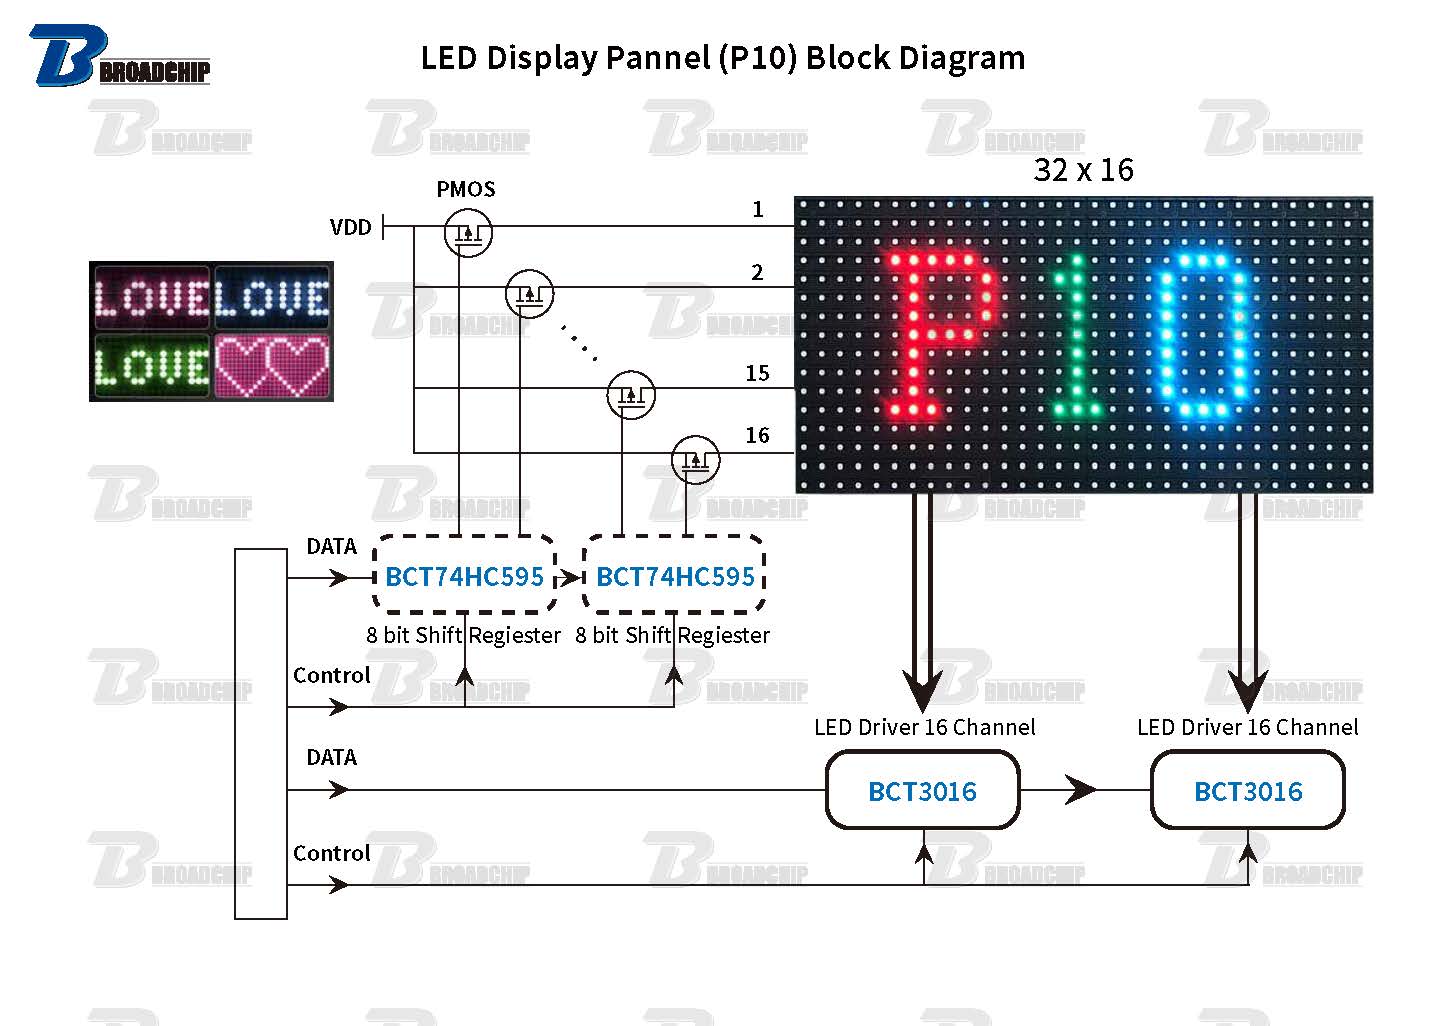 LED Display Pannel (P10) Block Diagram.jpg